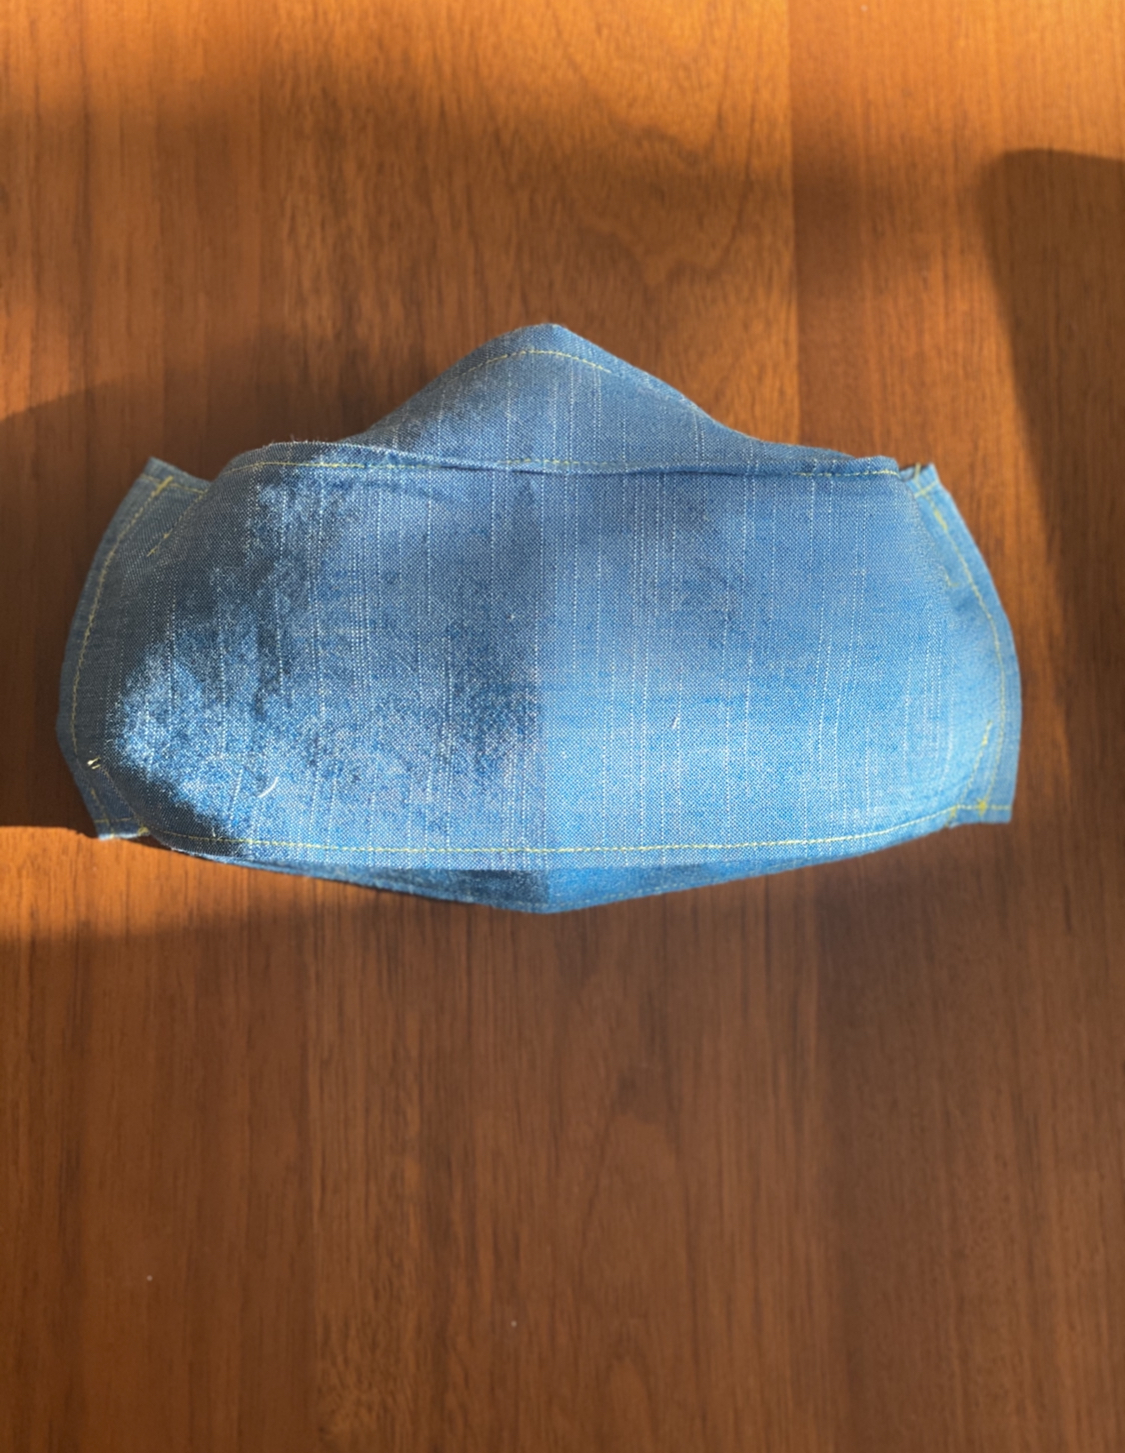 a light demin blue fabric mask